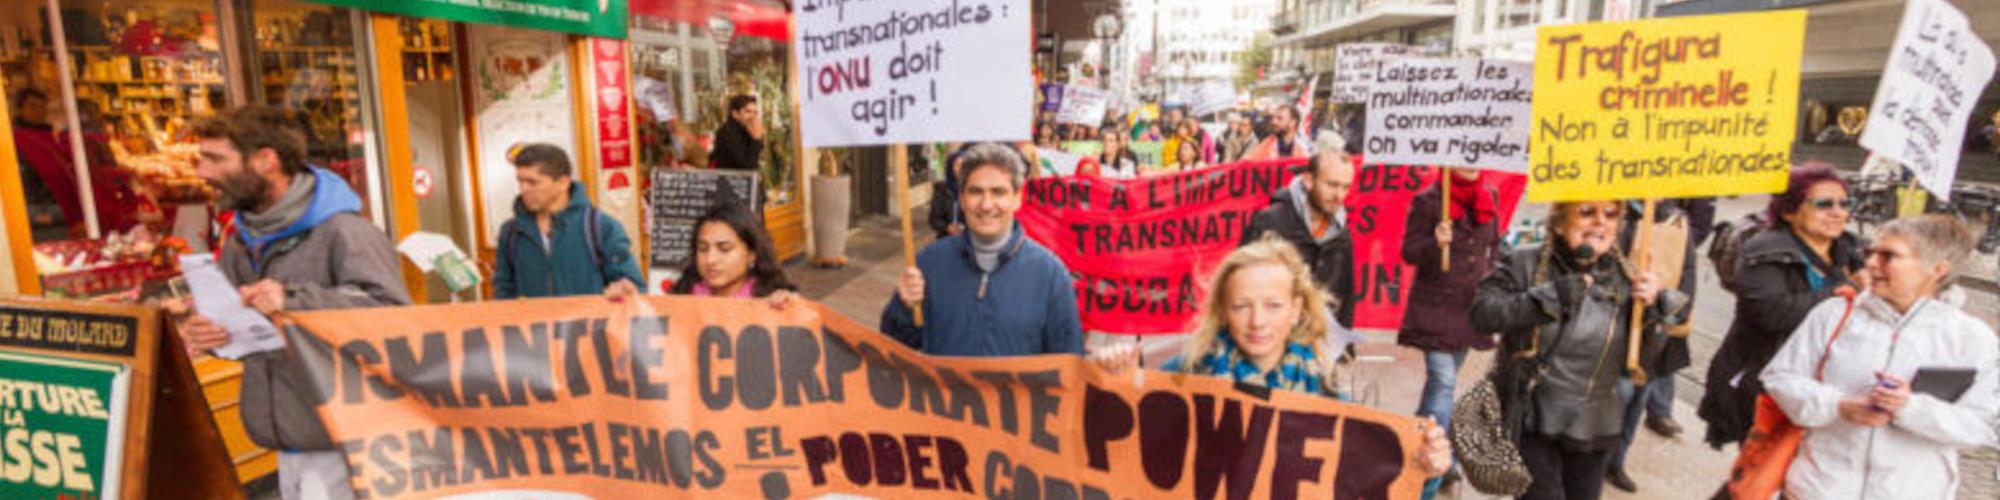 Een betoging van Dismantle Corporate Power